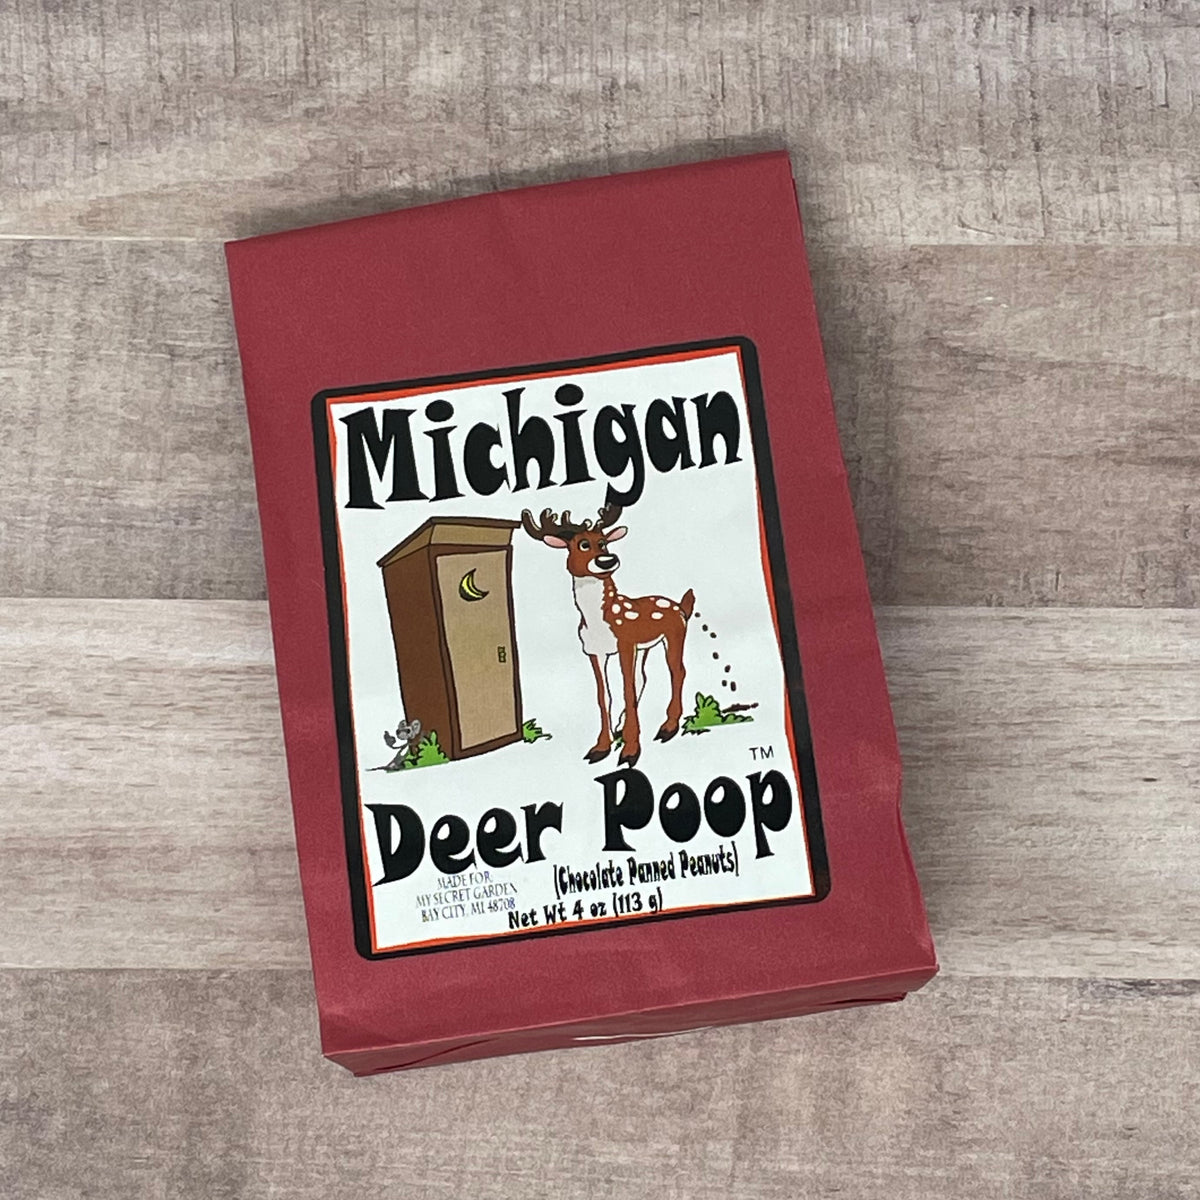 Michigan Deer Poop Chocolate Panned  Peanuts